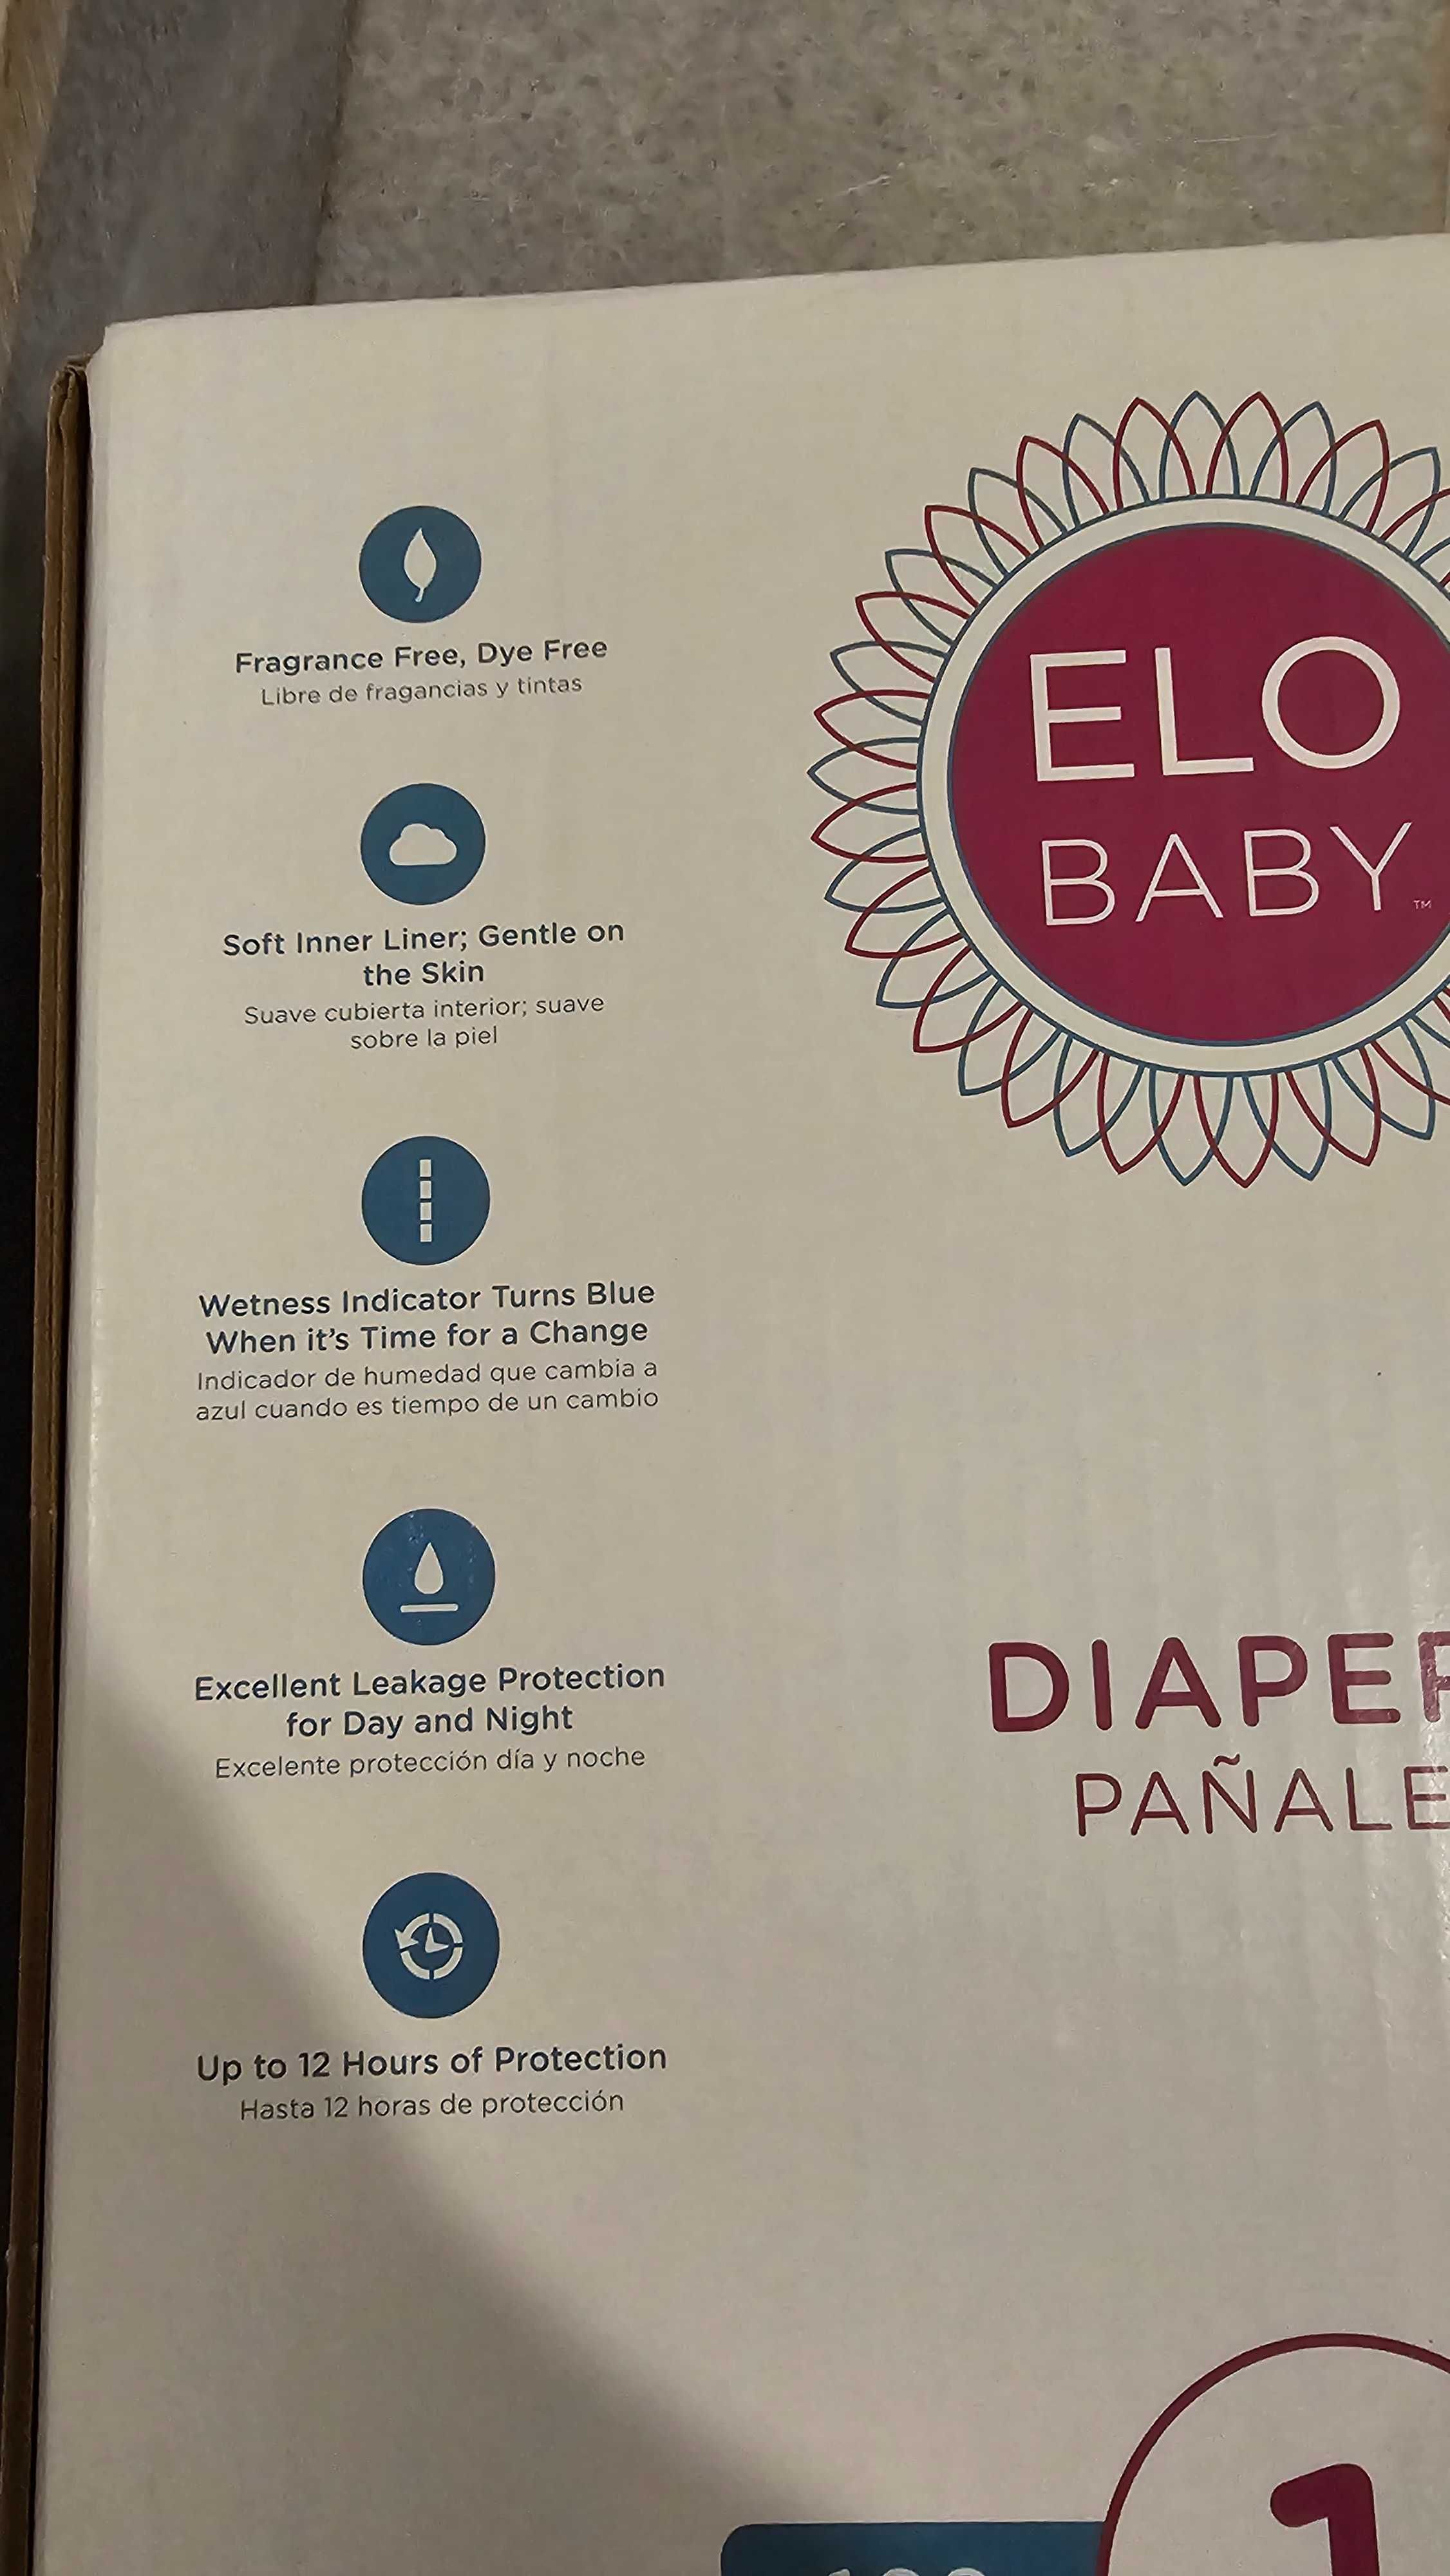 Бебешки памперси ELO BABY внос от UK, размер 1  - 250 броя